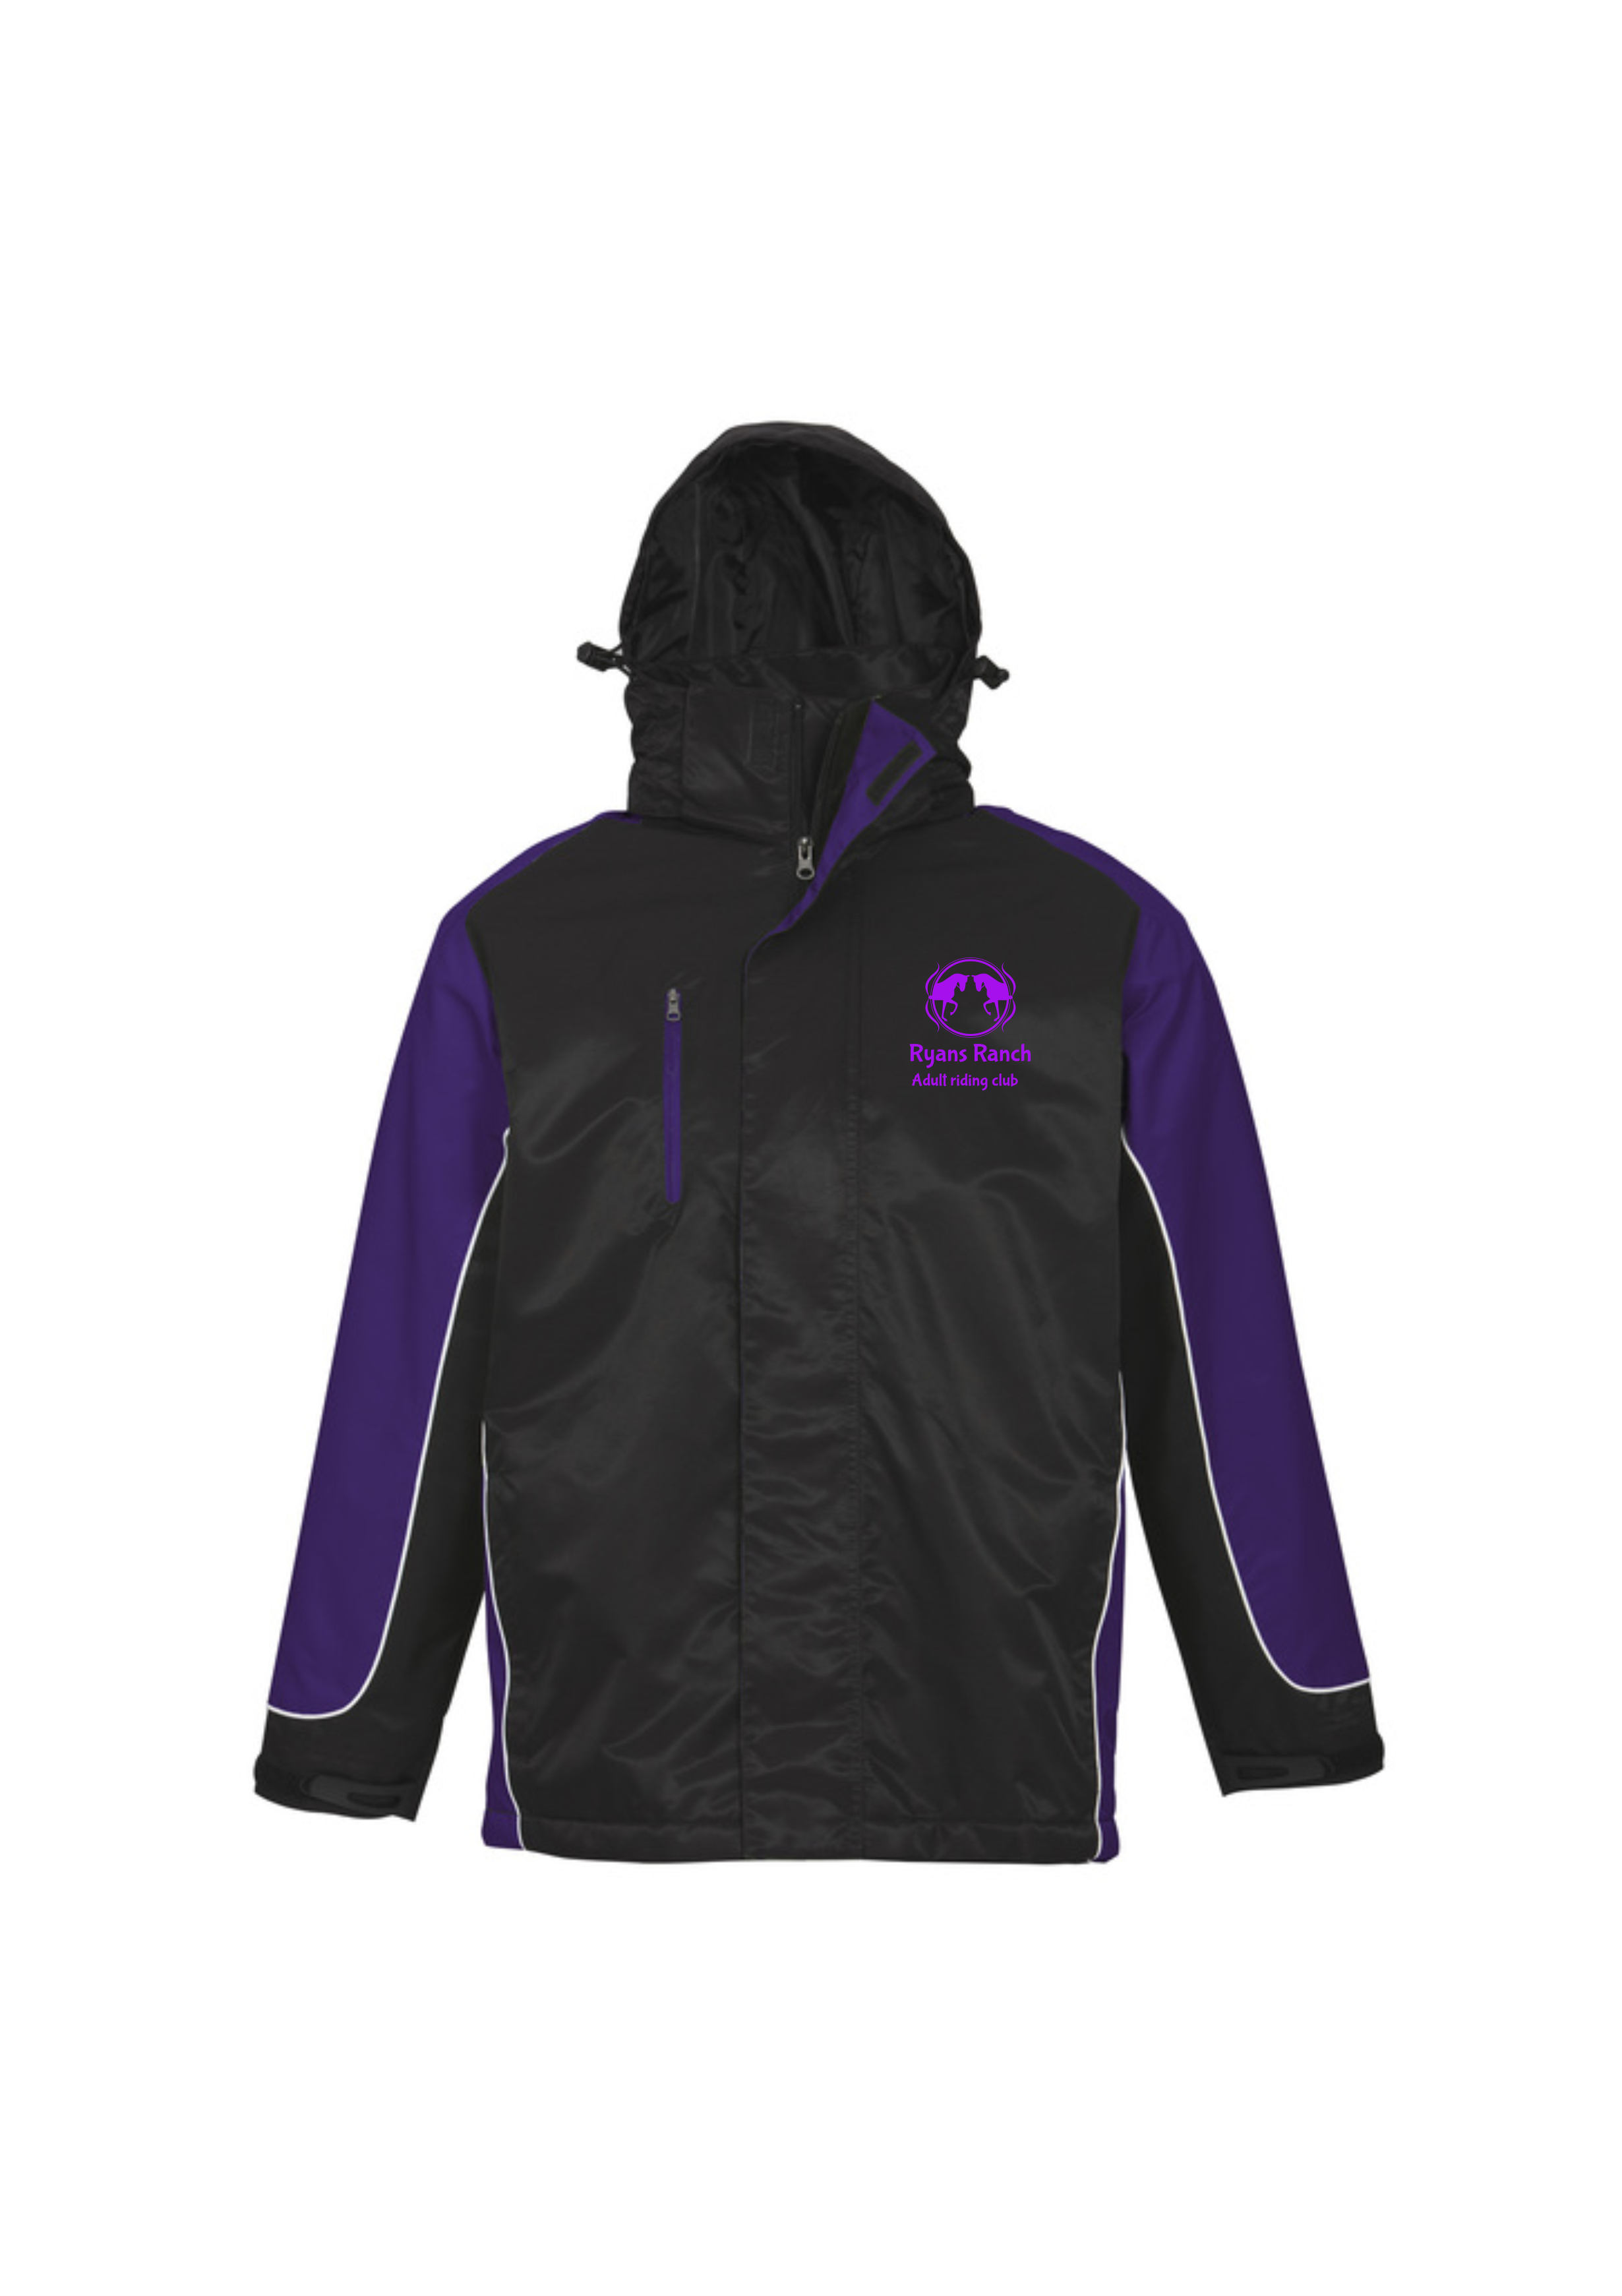 Unisex Nitro Jacket in Black/Purple/White